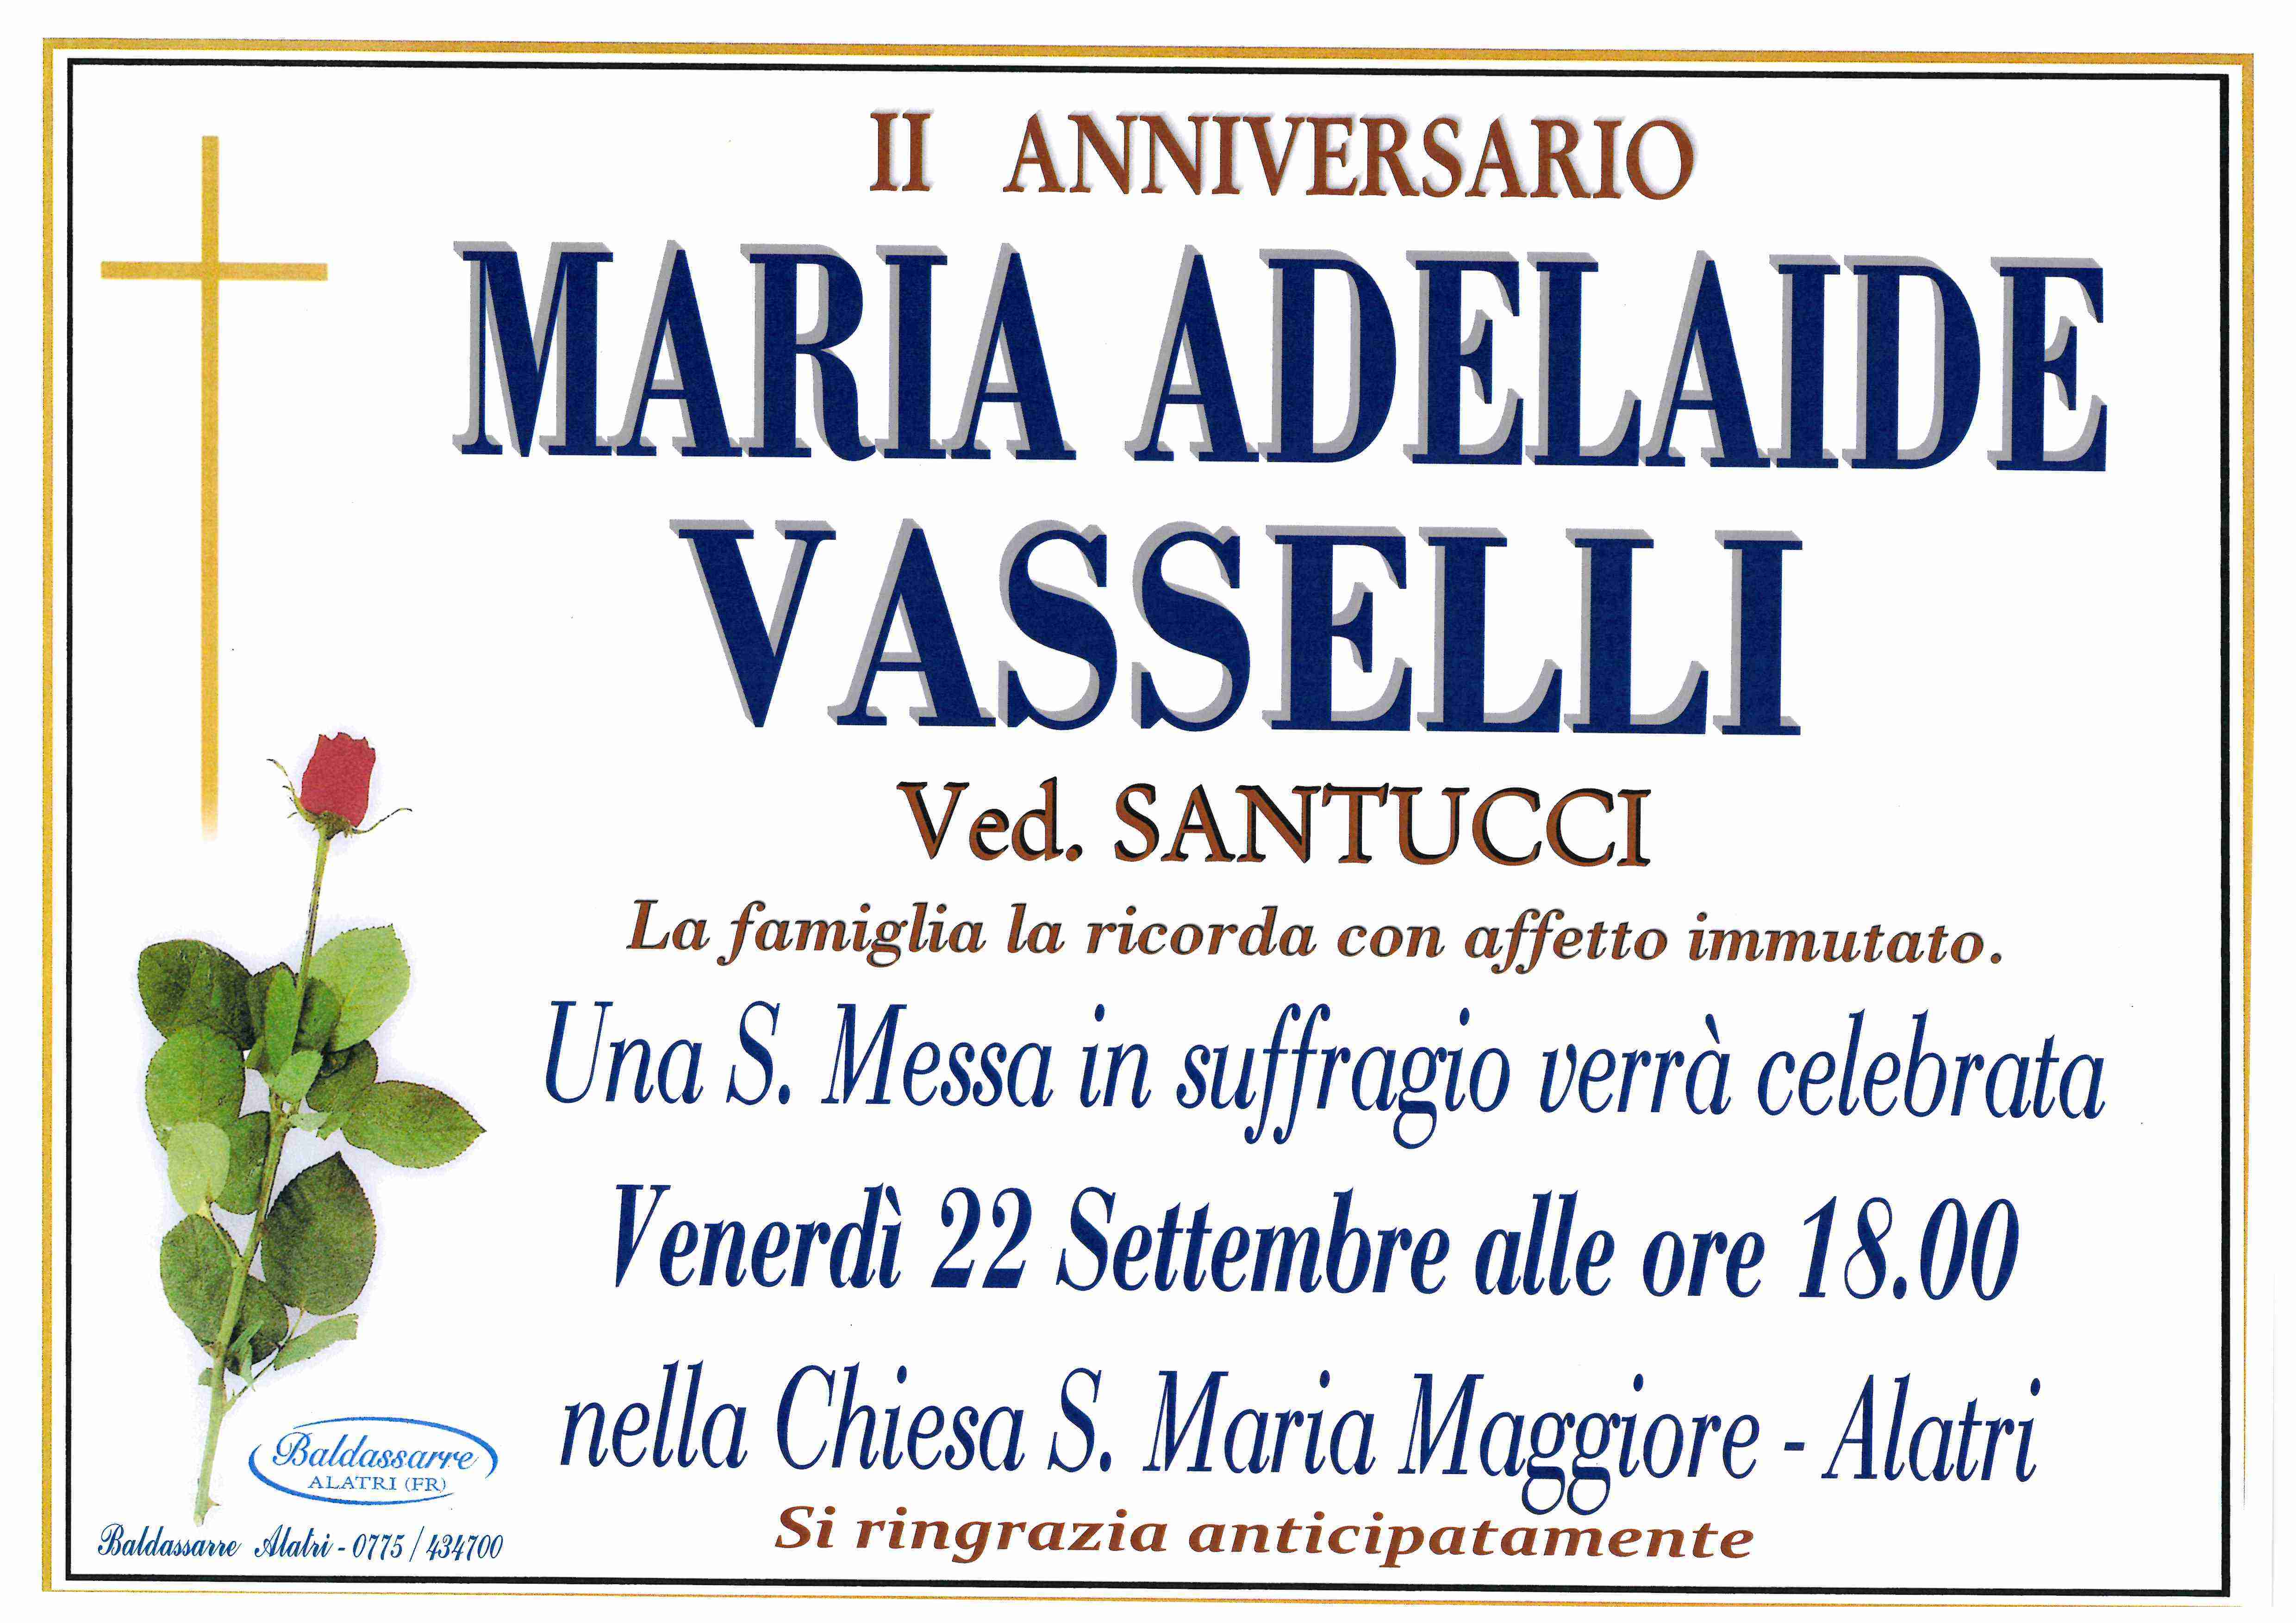 Maria Adelaide Vasselli